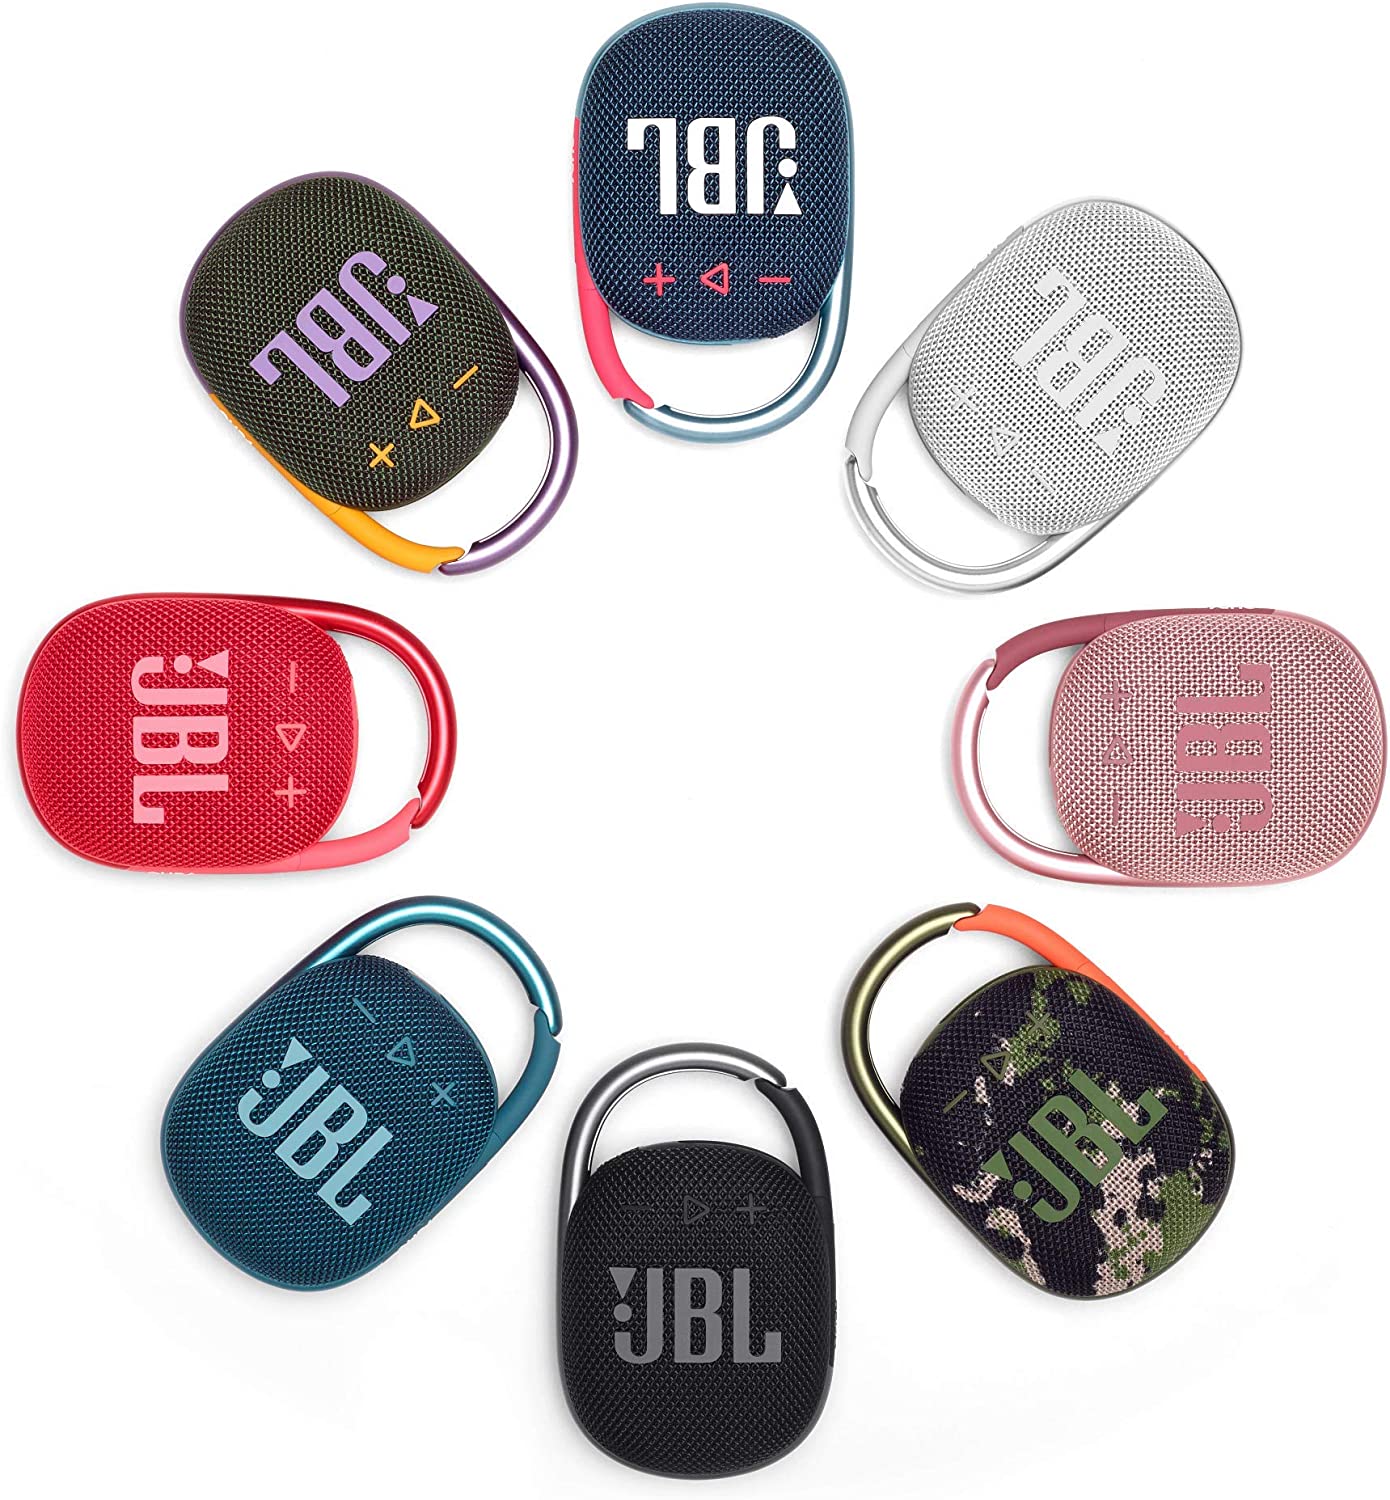 JBL CLIP 4 – Enceinte Bluetooth portable et légère avec mousqueton